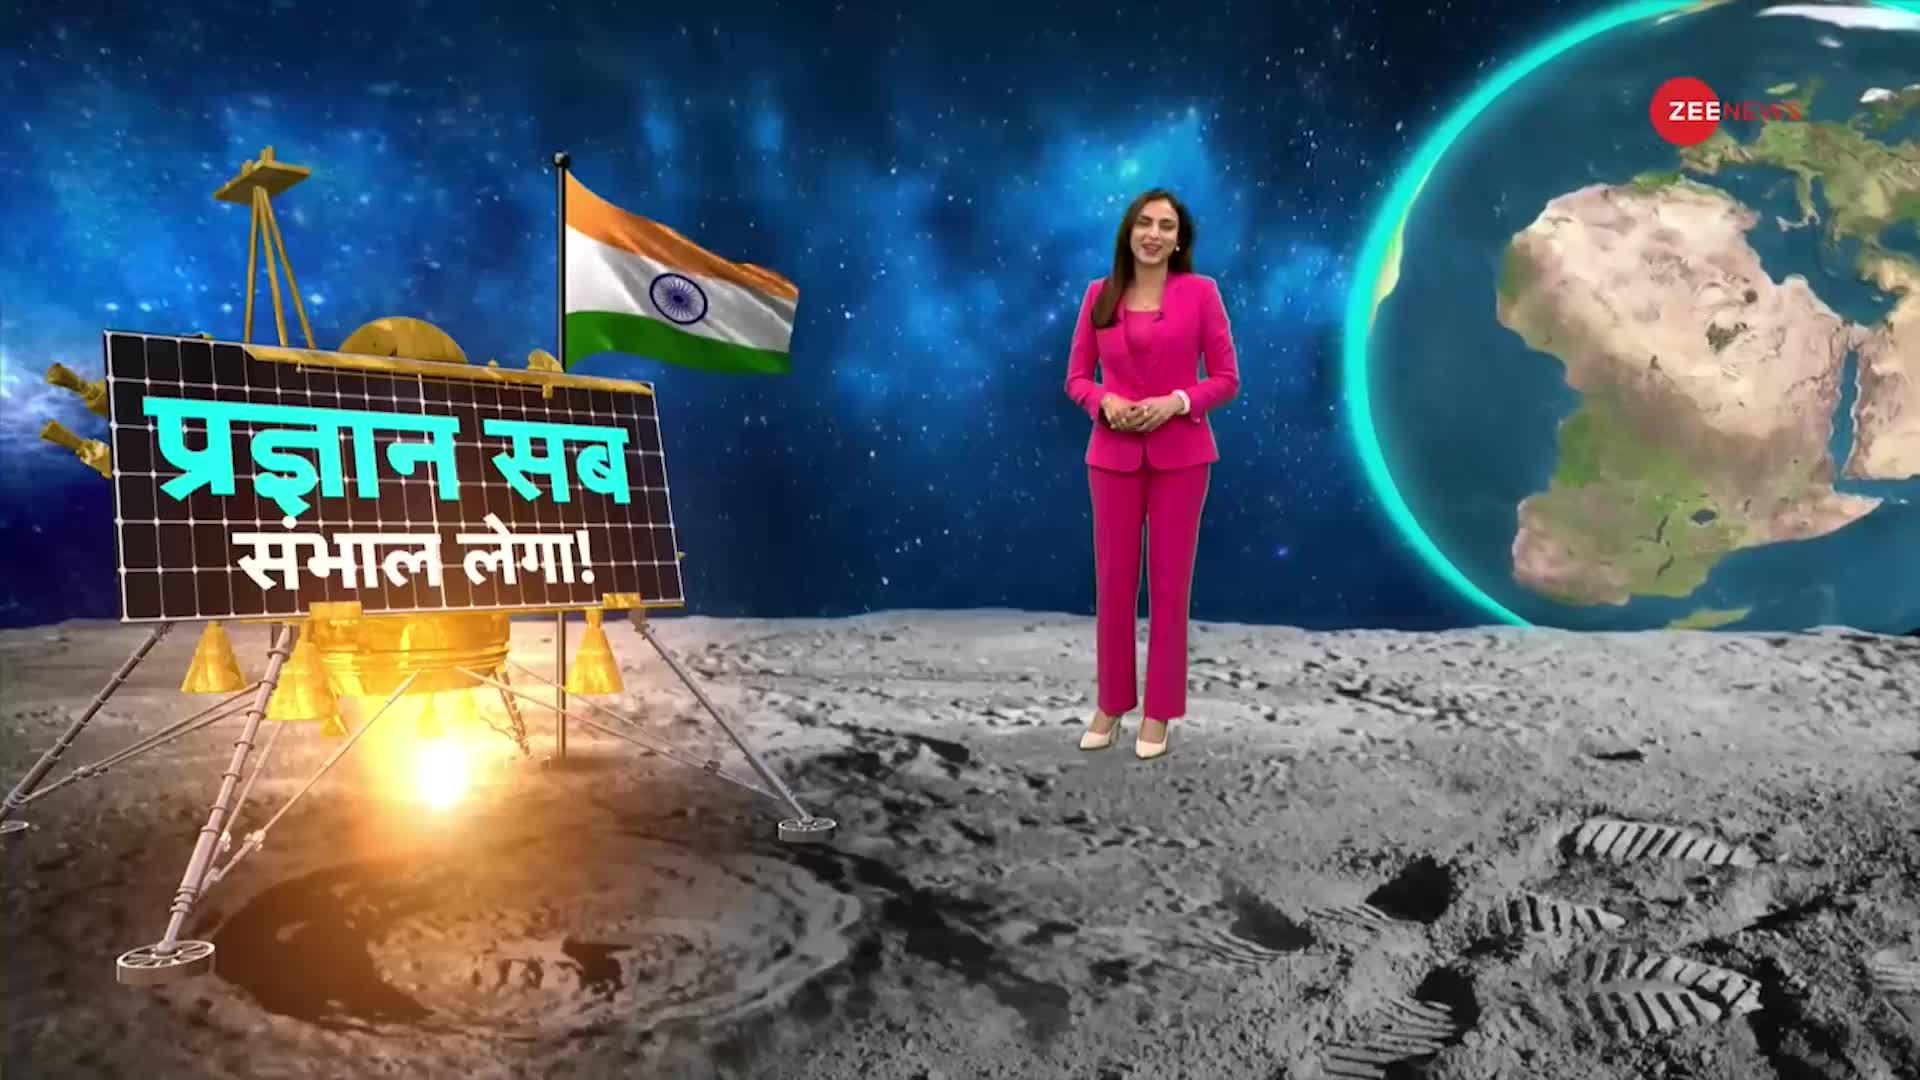 Chandrayaan-3: भारत चांद के दक्षिणी ध्रुव पर लैंडिंग के लिए तैयार, ISRO की 6 पहियों वाली प्रयोगशाला